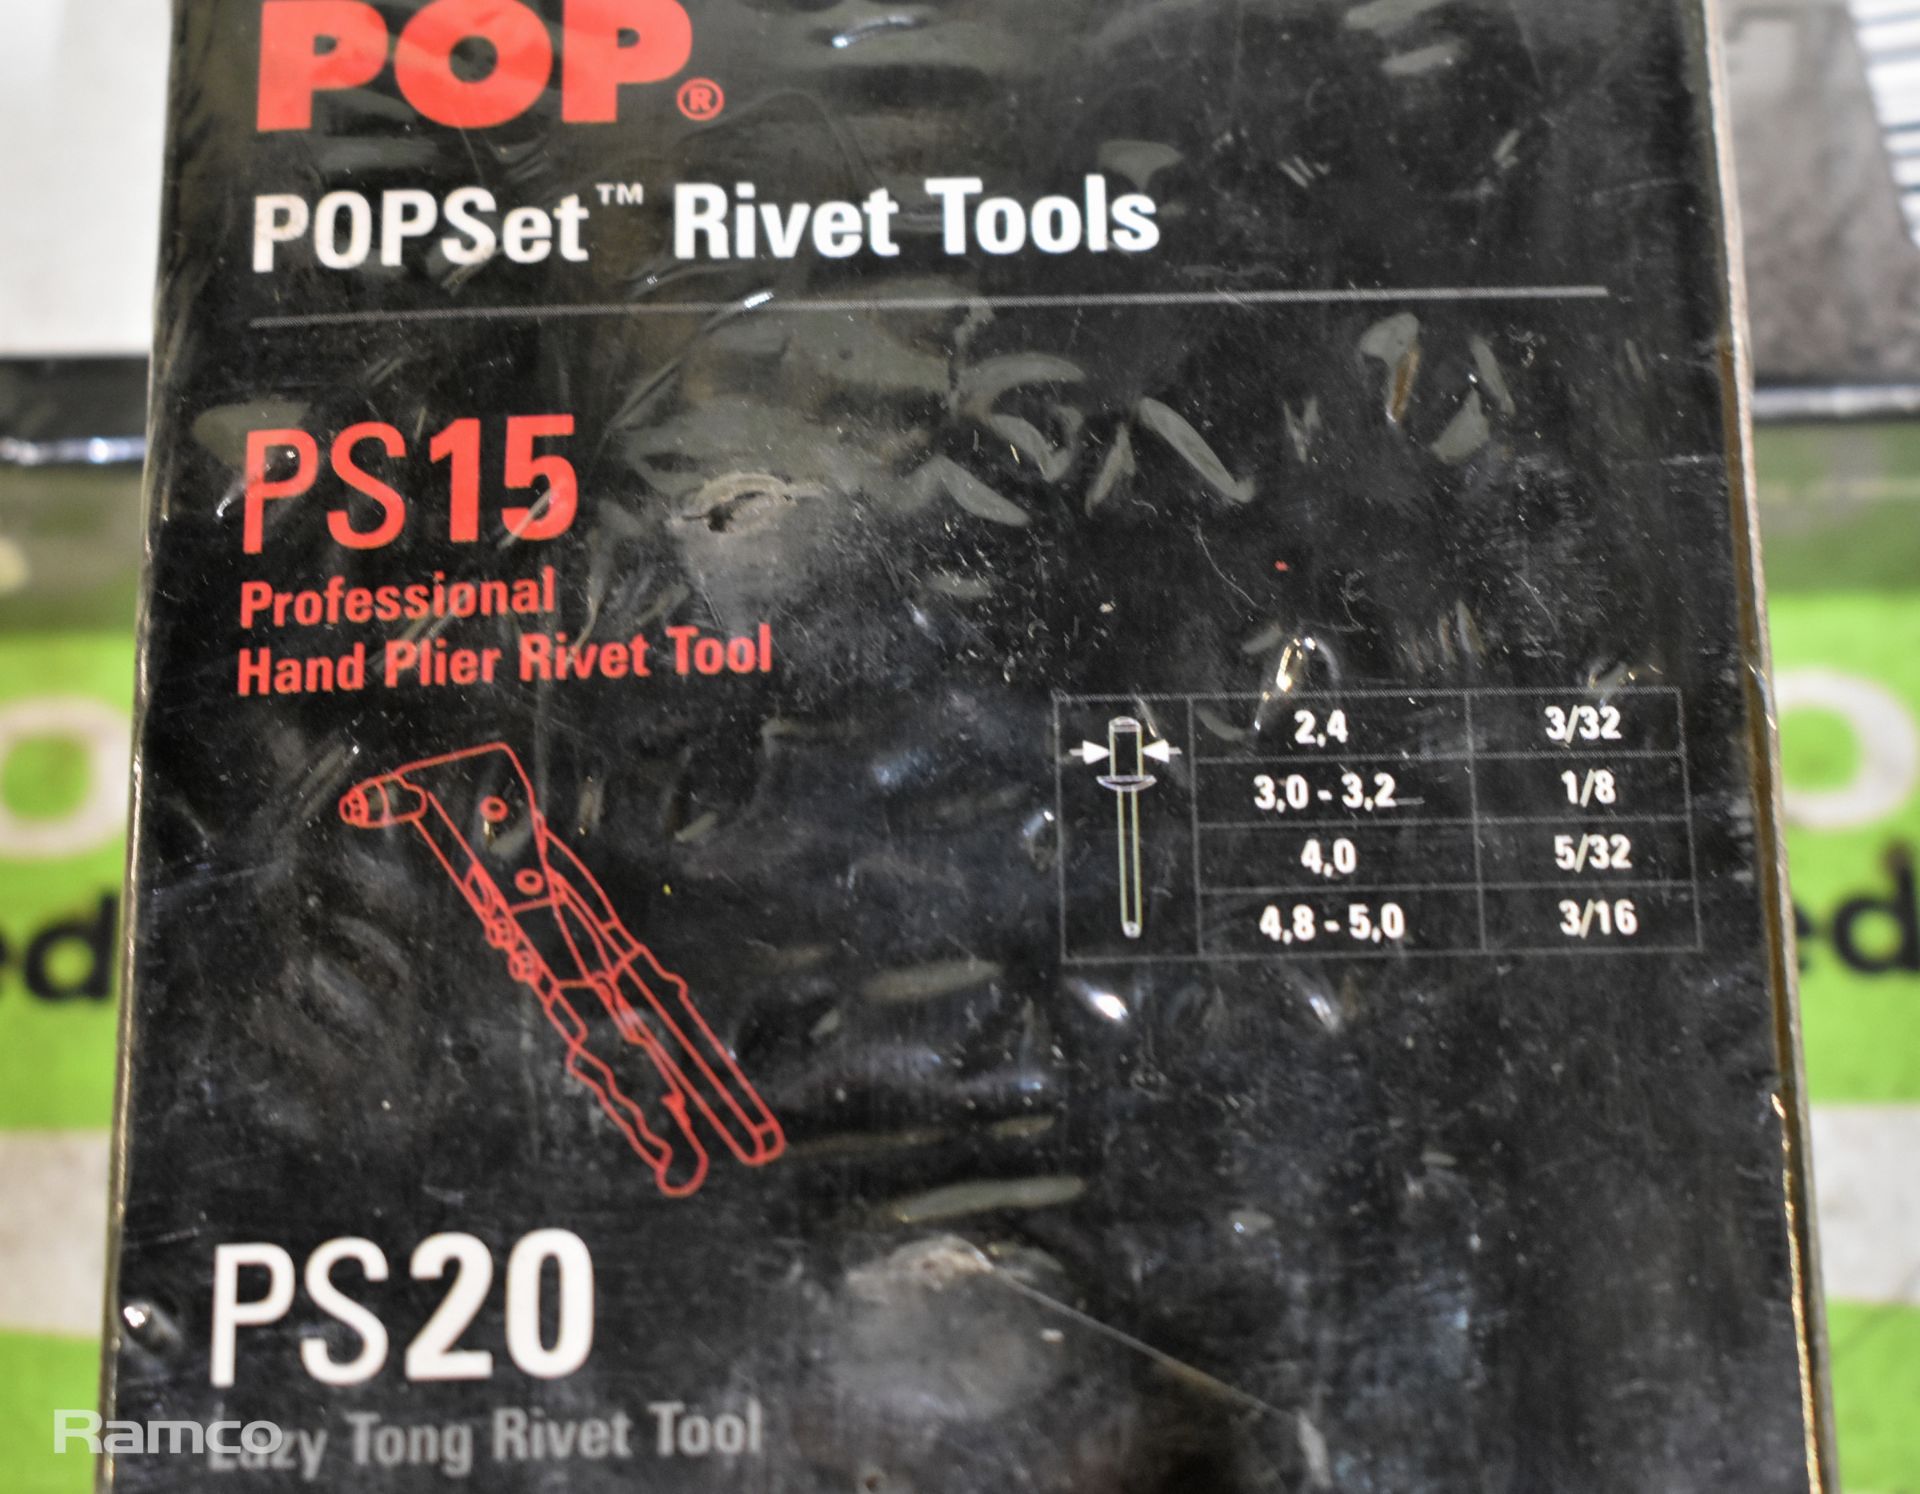 2x POP Set PS15 professional hand plier rivet tools - Image 2 of 2